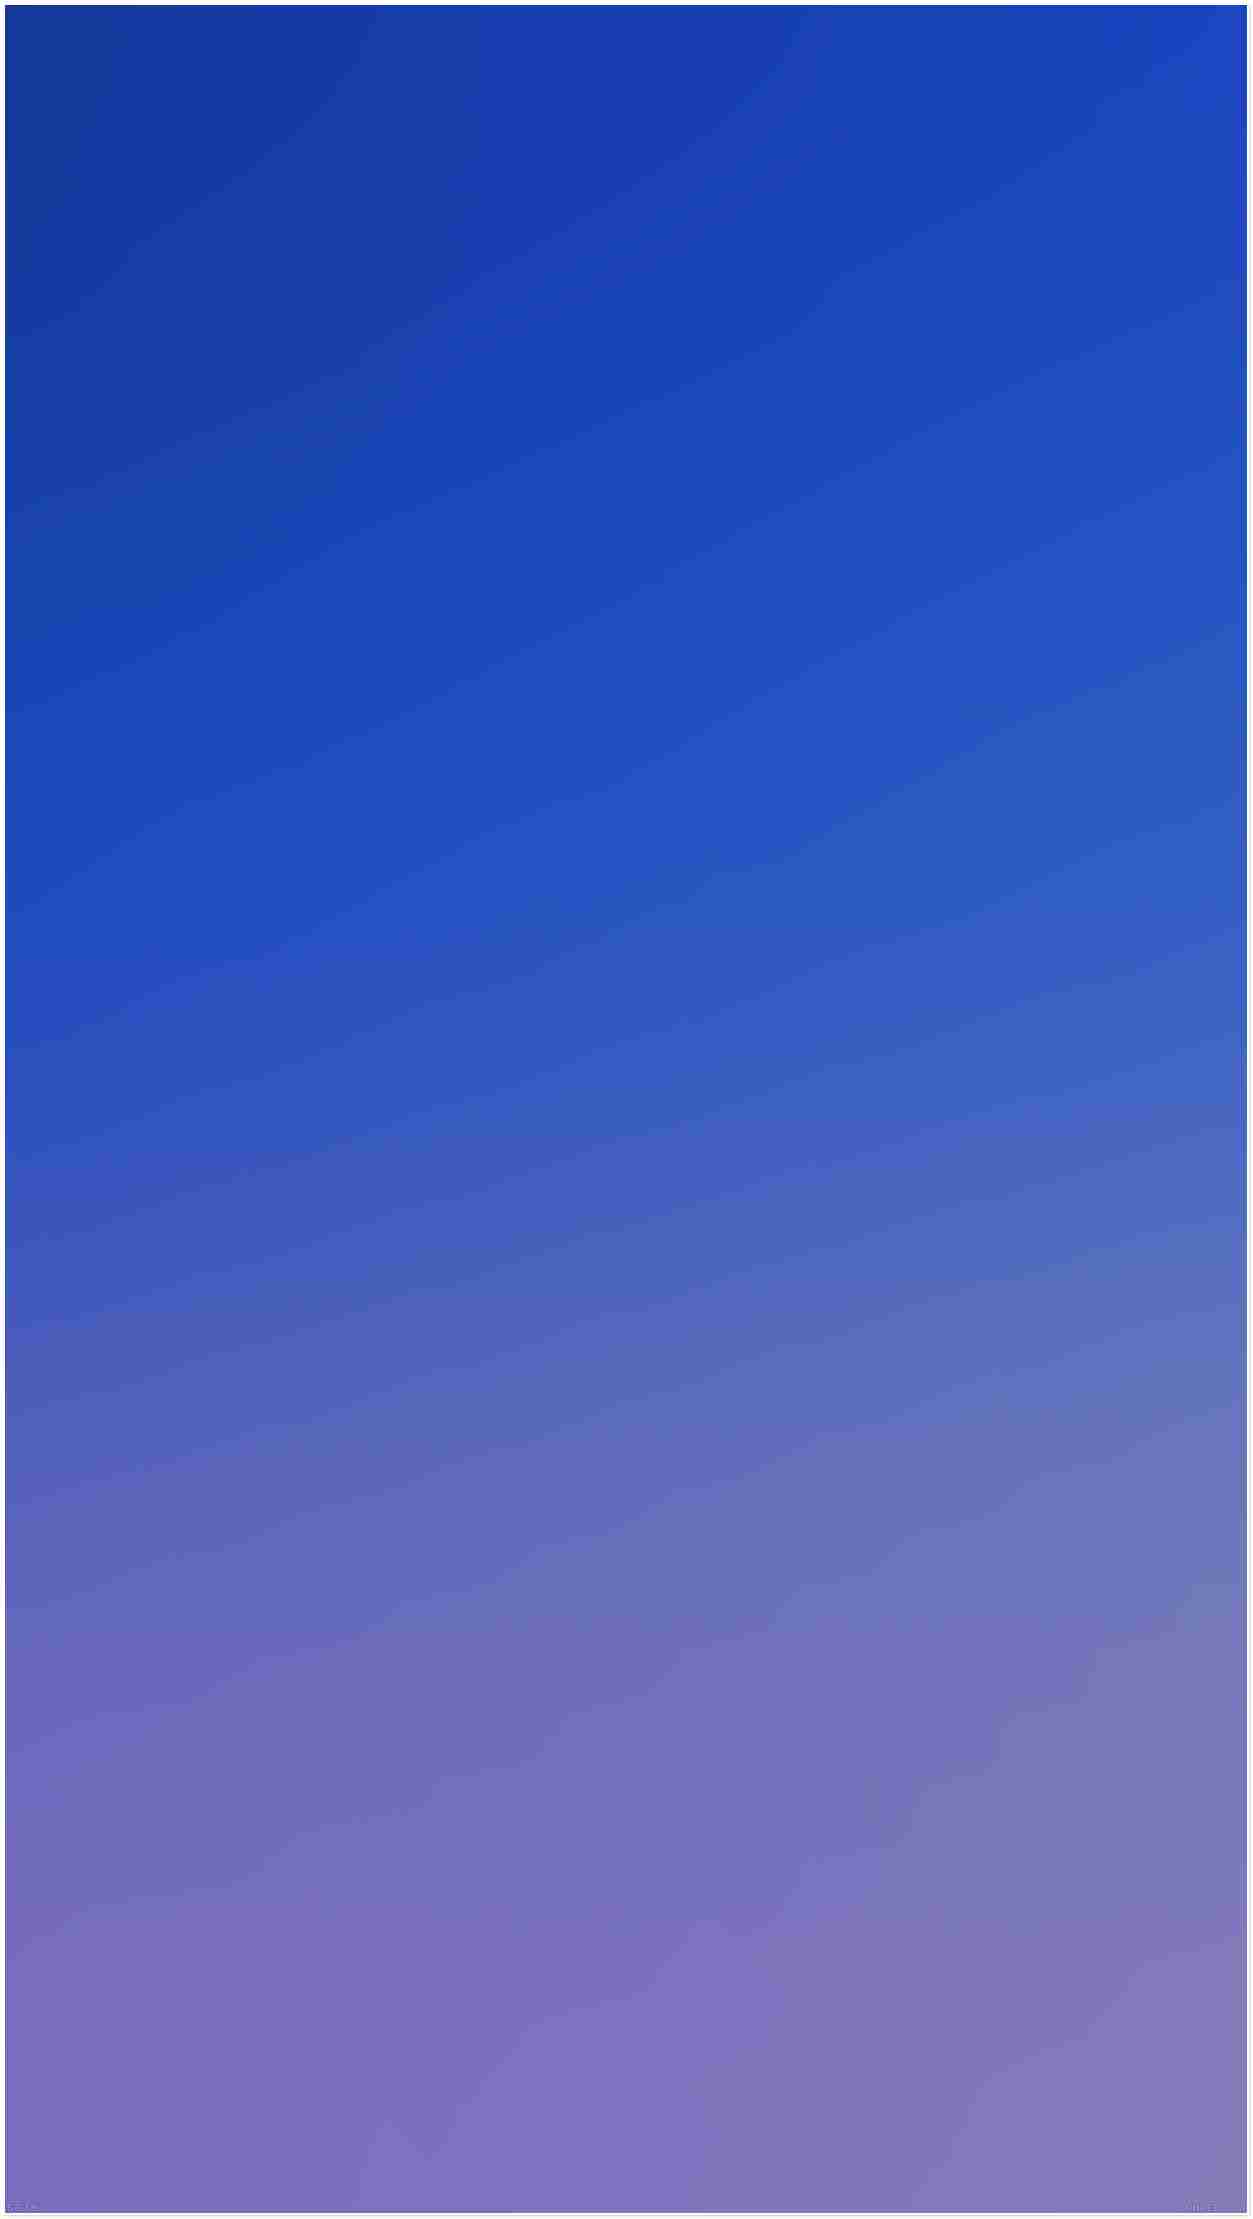 4k fond d'écran téléphone,bleu,violet,violet,bleu cobalt,ciel